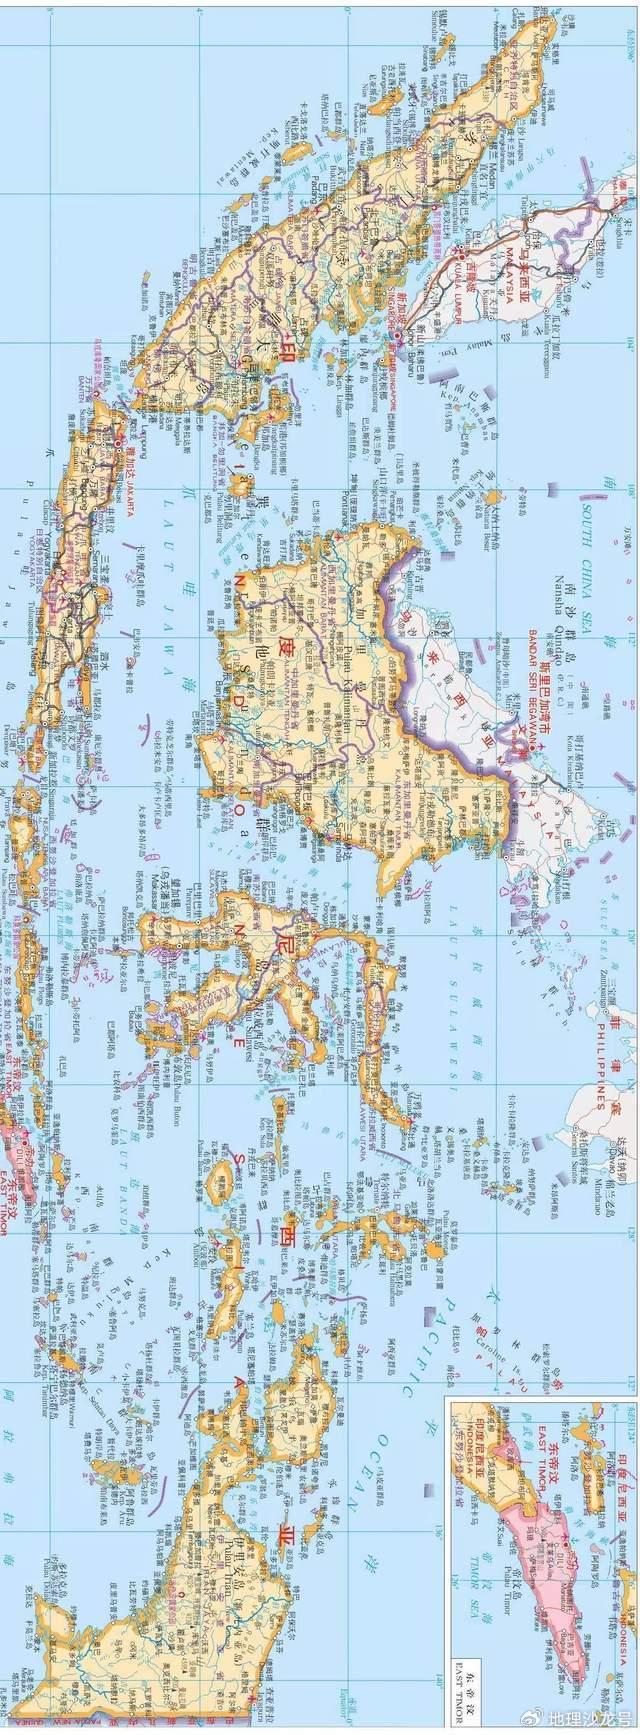 印度尼西亚被称为万岛之国,全国岛屿总数在17000座以上